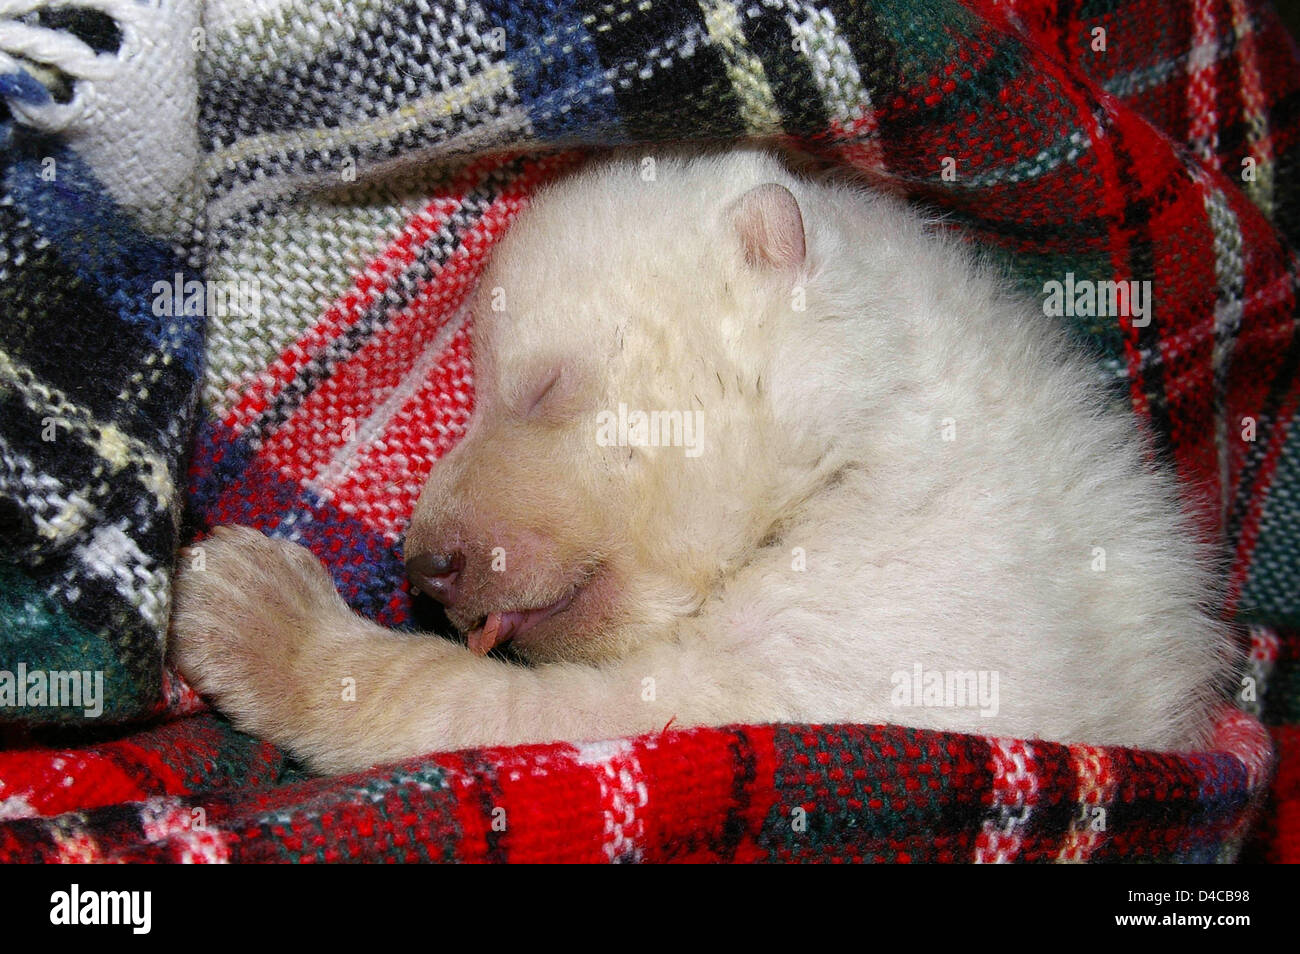 La dispensa non datata immagine mostra un orso polare baby allo zoo di  Norimberga, Germania. Per la propria sicurezza, il bambino è stato separato  dalla sua madre vera e bottiglia-alimentato. Foto: Stadt